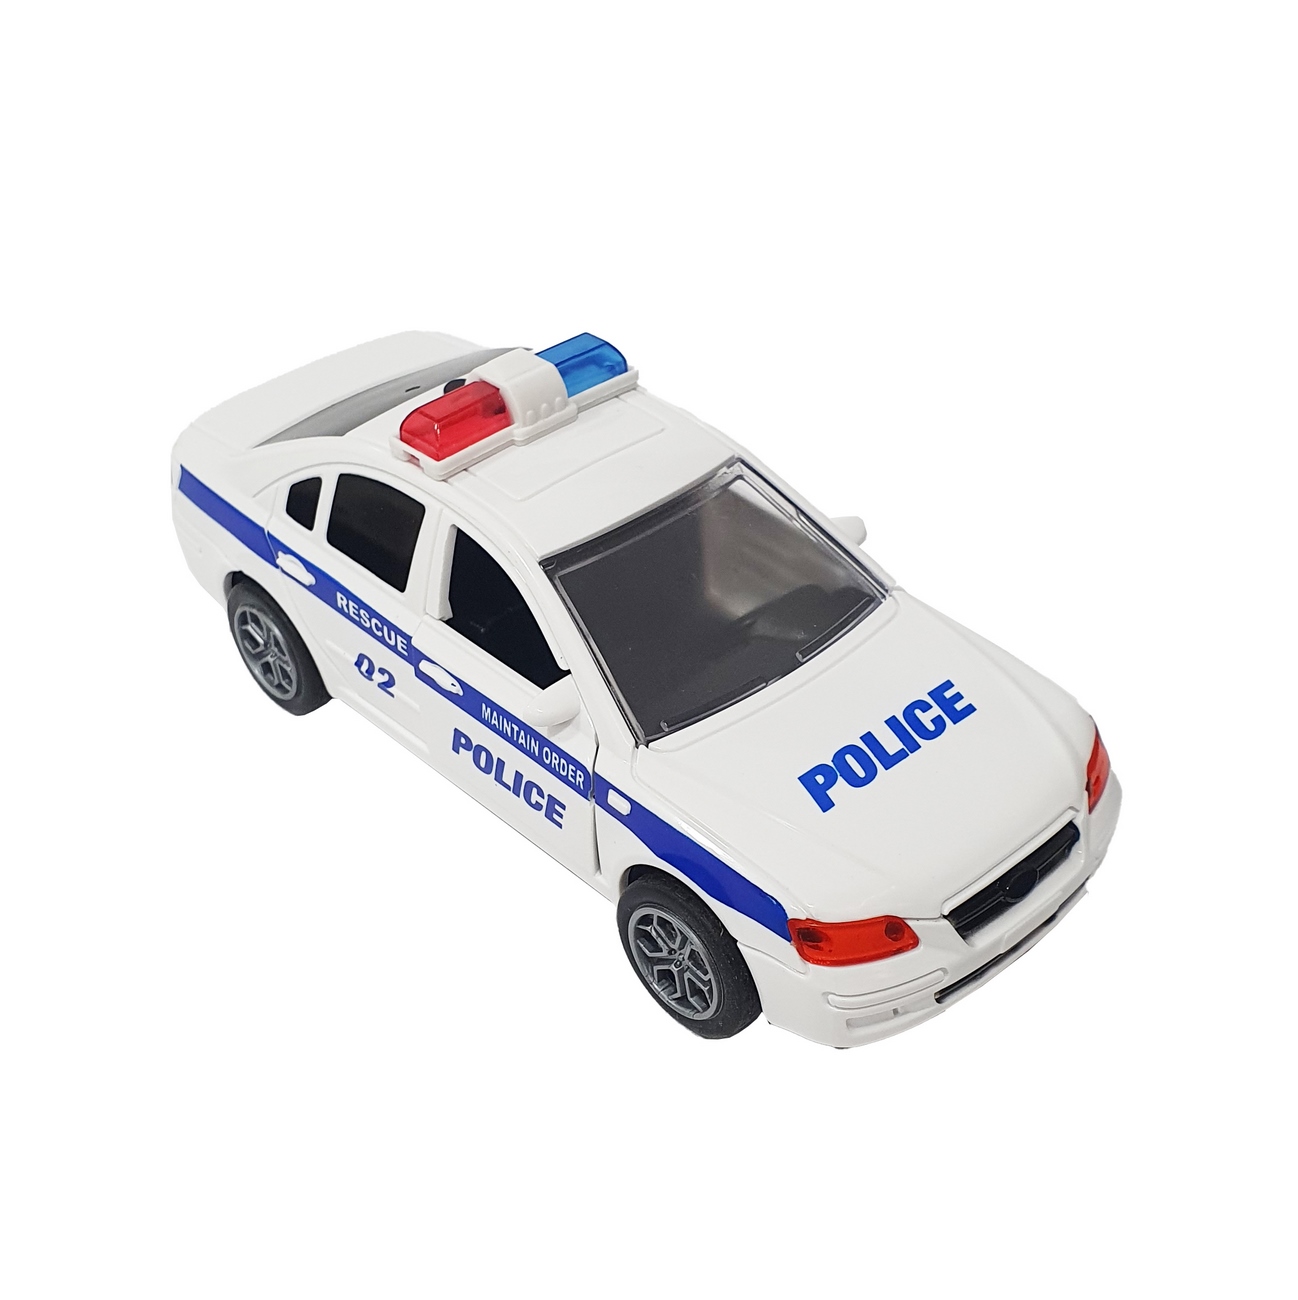 Carro De Policia Colección A Escala Juguete Luces Sonido 